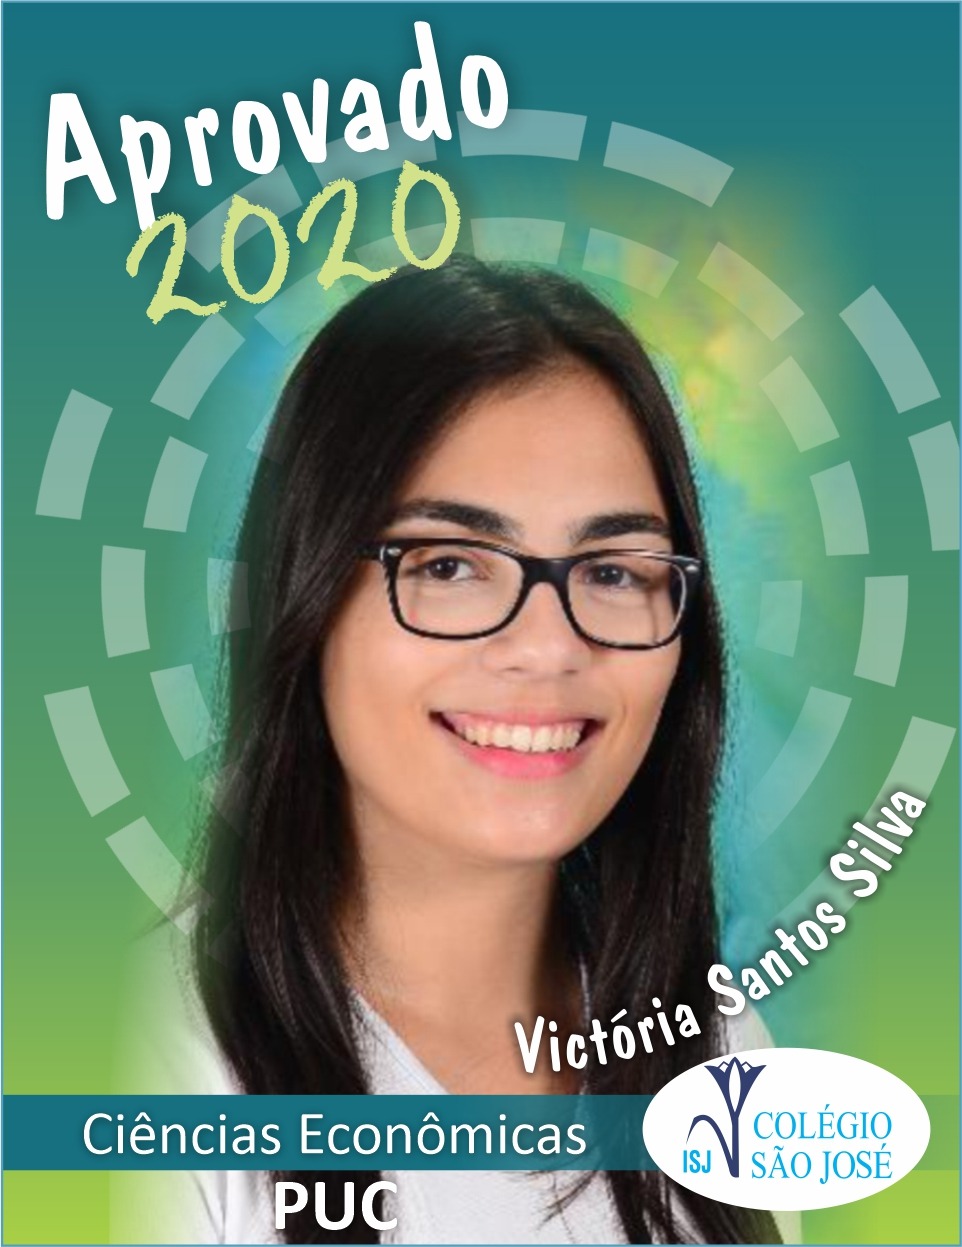 Parabéns! Aprovados 2020 - Victória Santos Silva